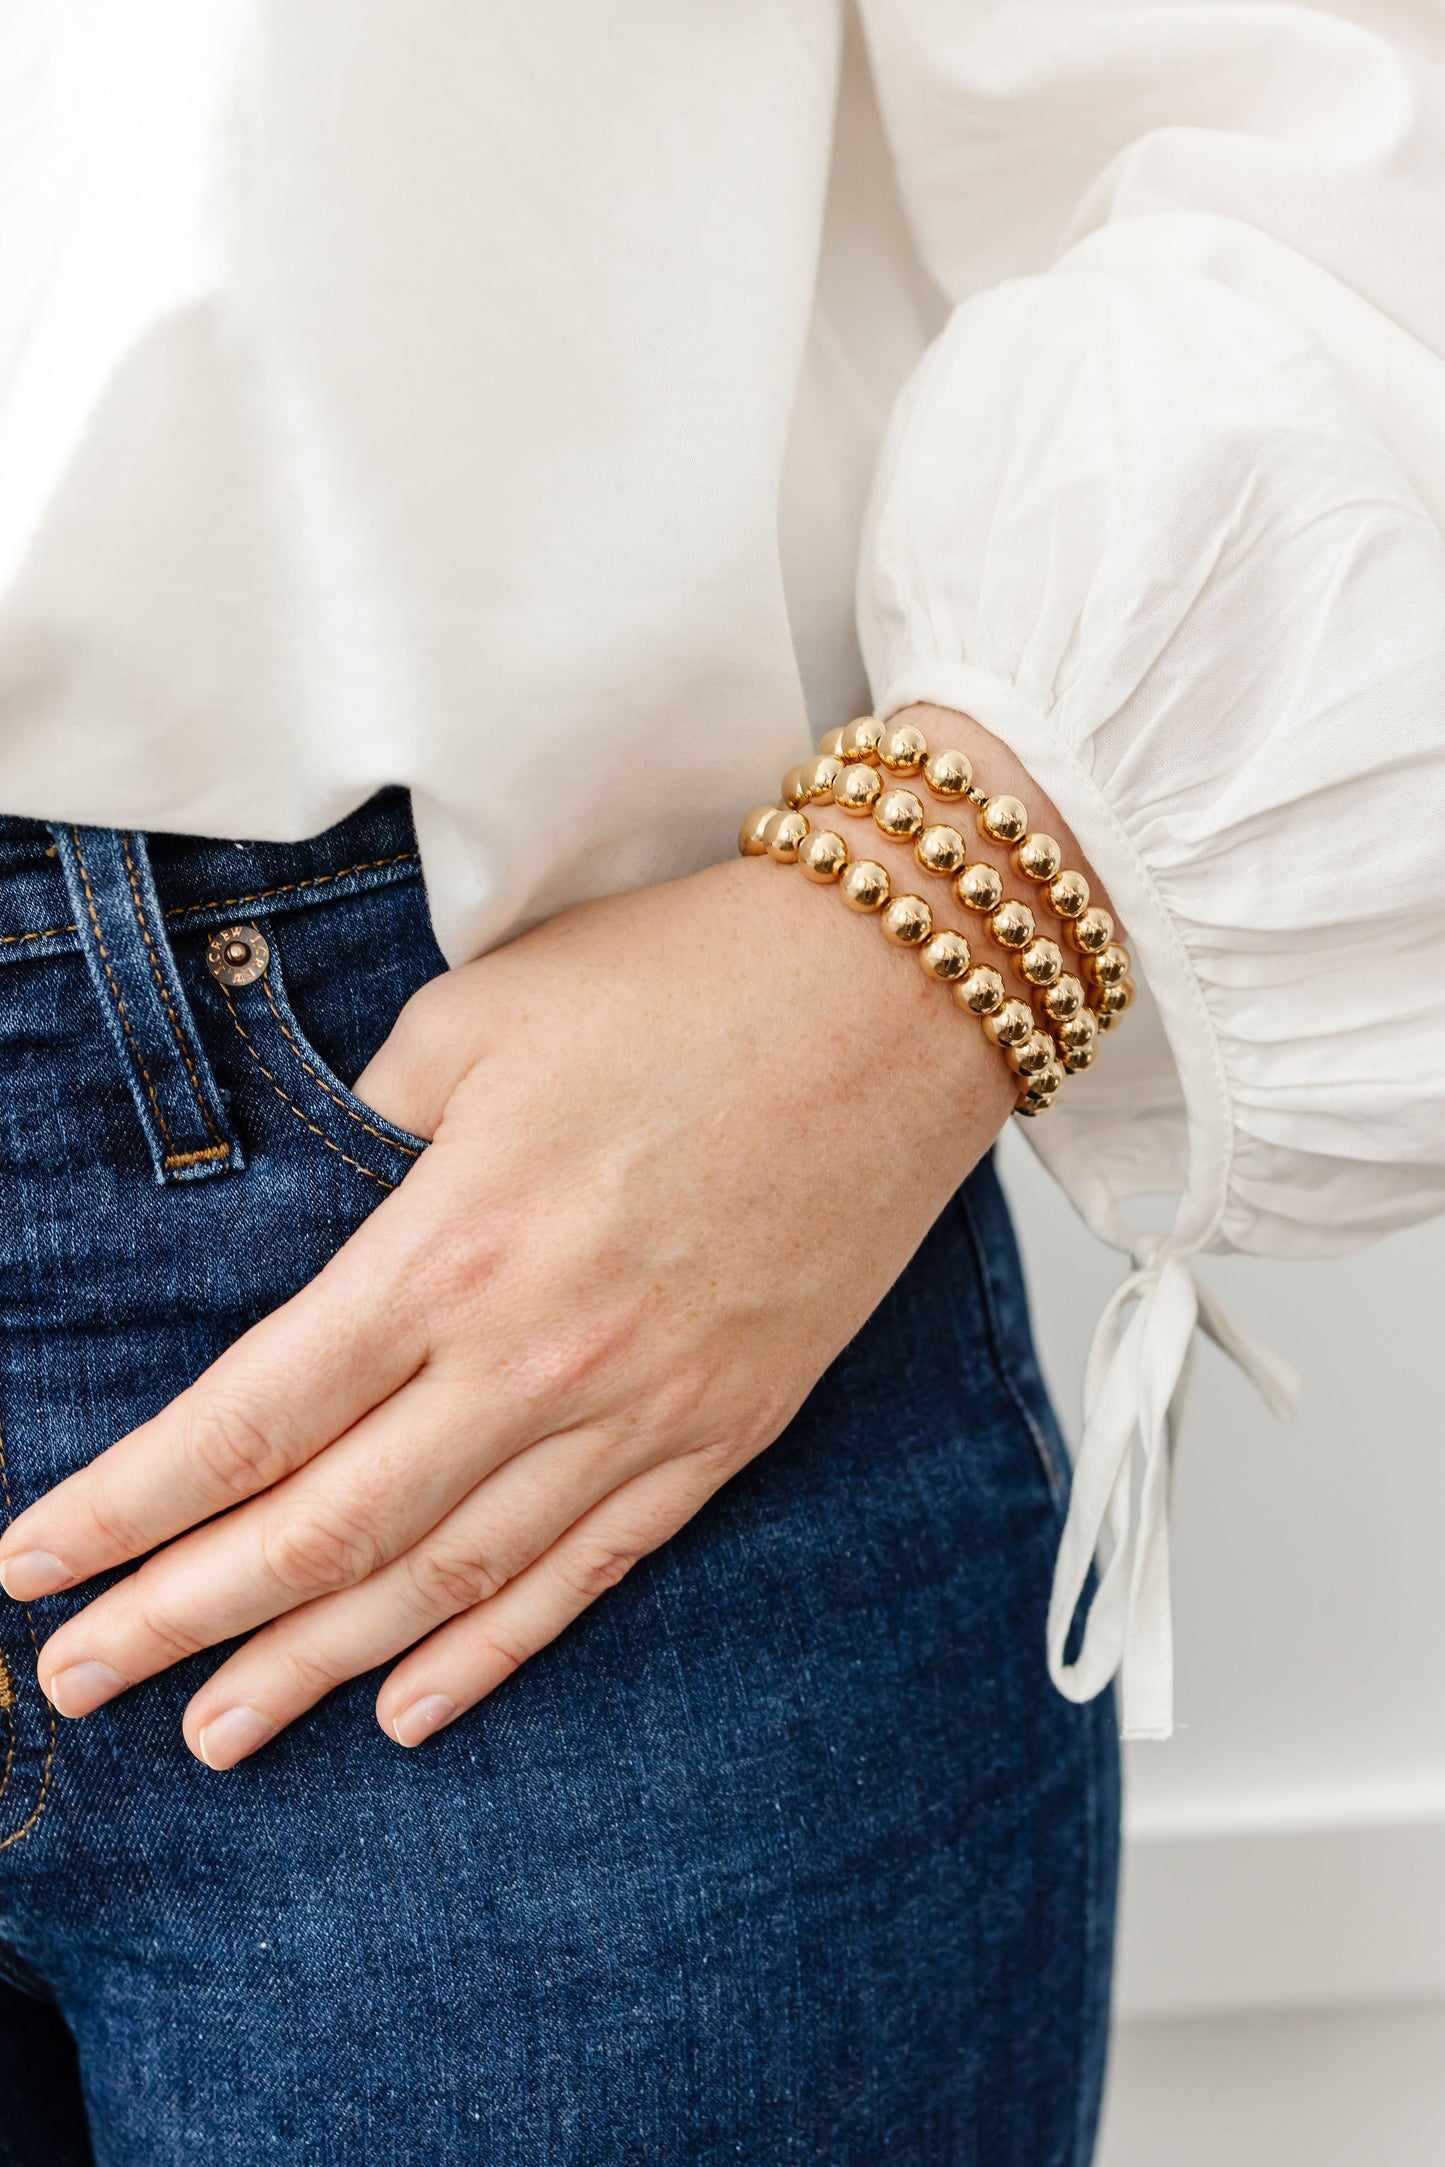 Stretchy Kindness Adult Bracelet (8MM beads)